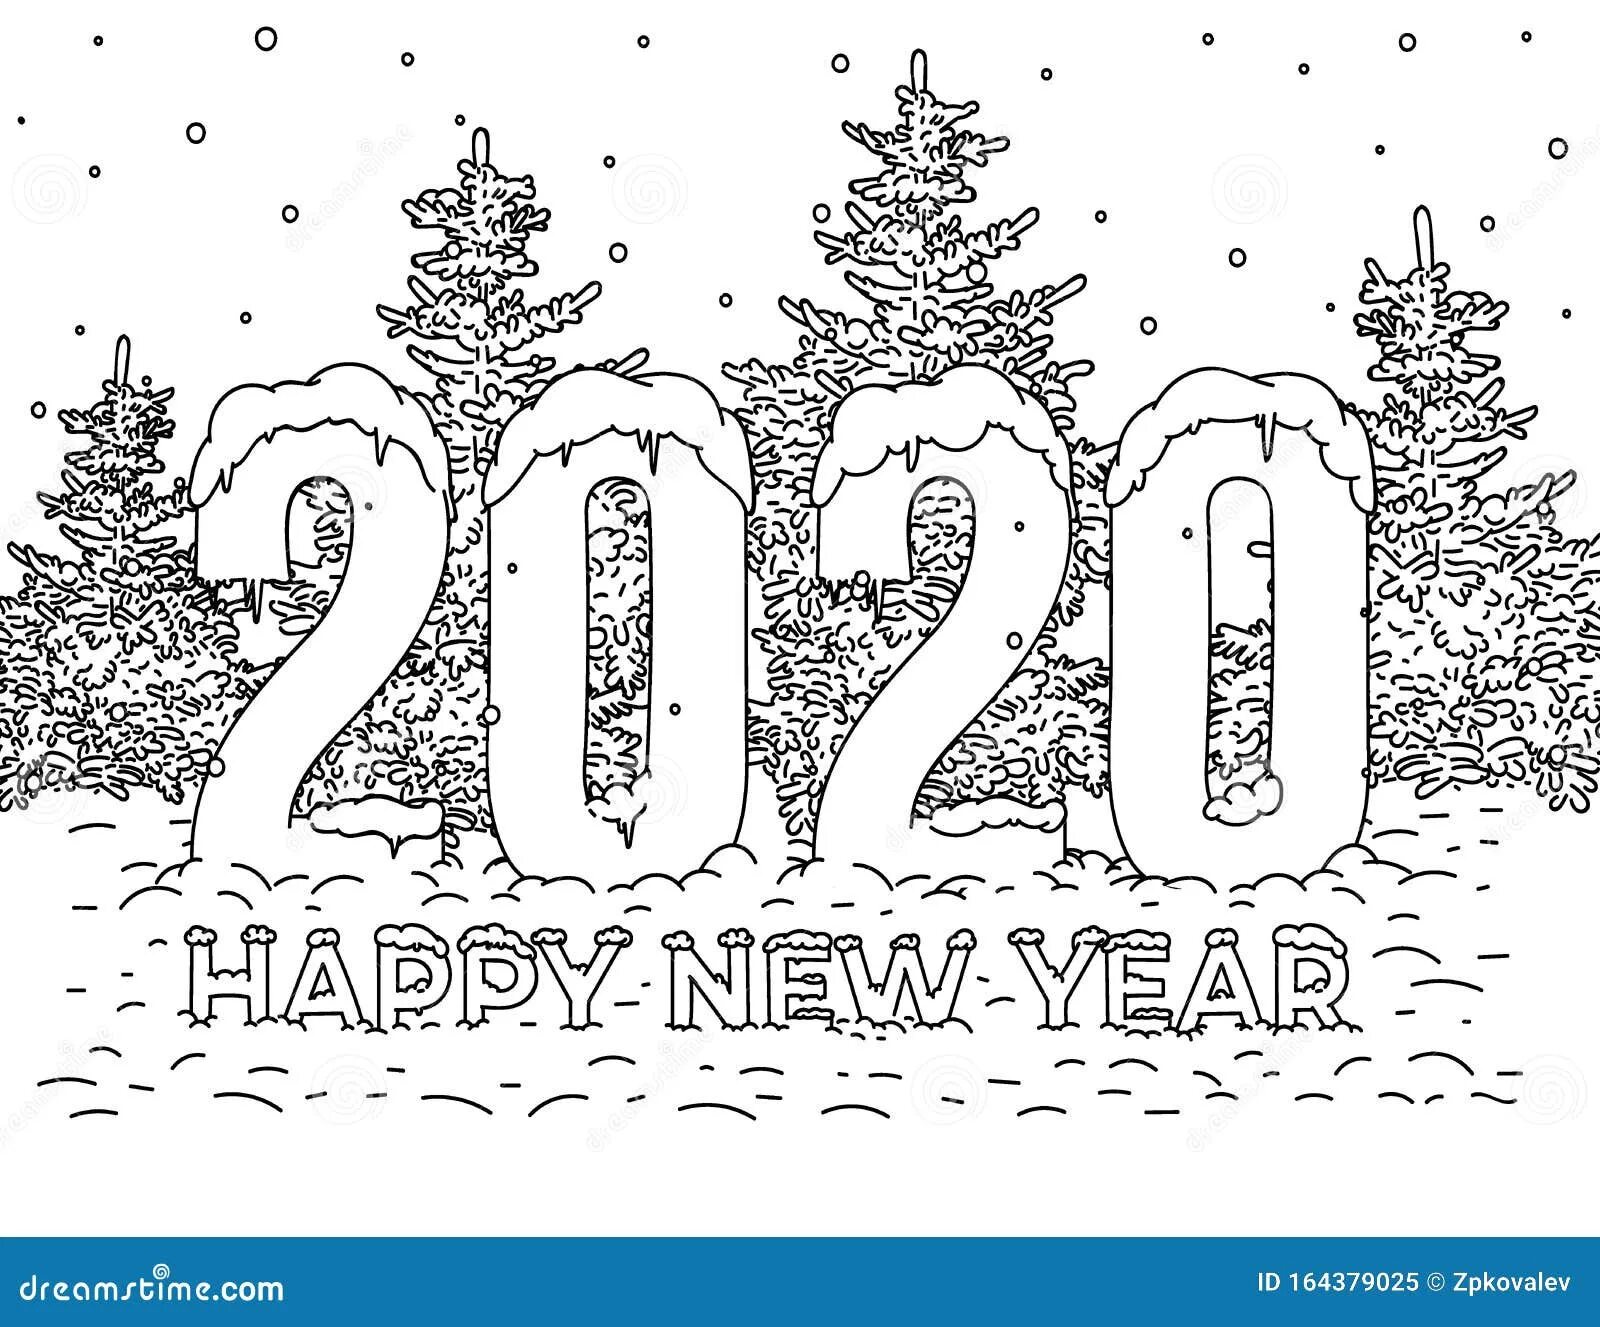 Черно белая открытка с новым годом. Рисунки на новый год 2022. Рисунок на новый год 2023. Открытка на новый год 2017 черно белая.